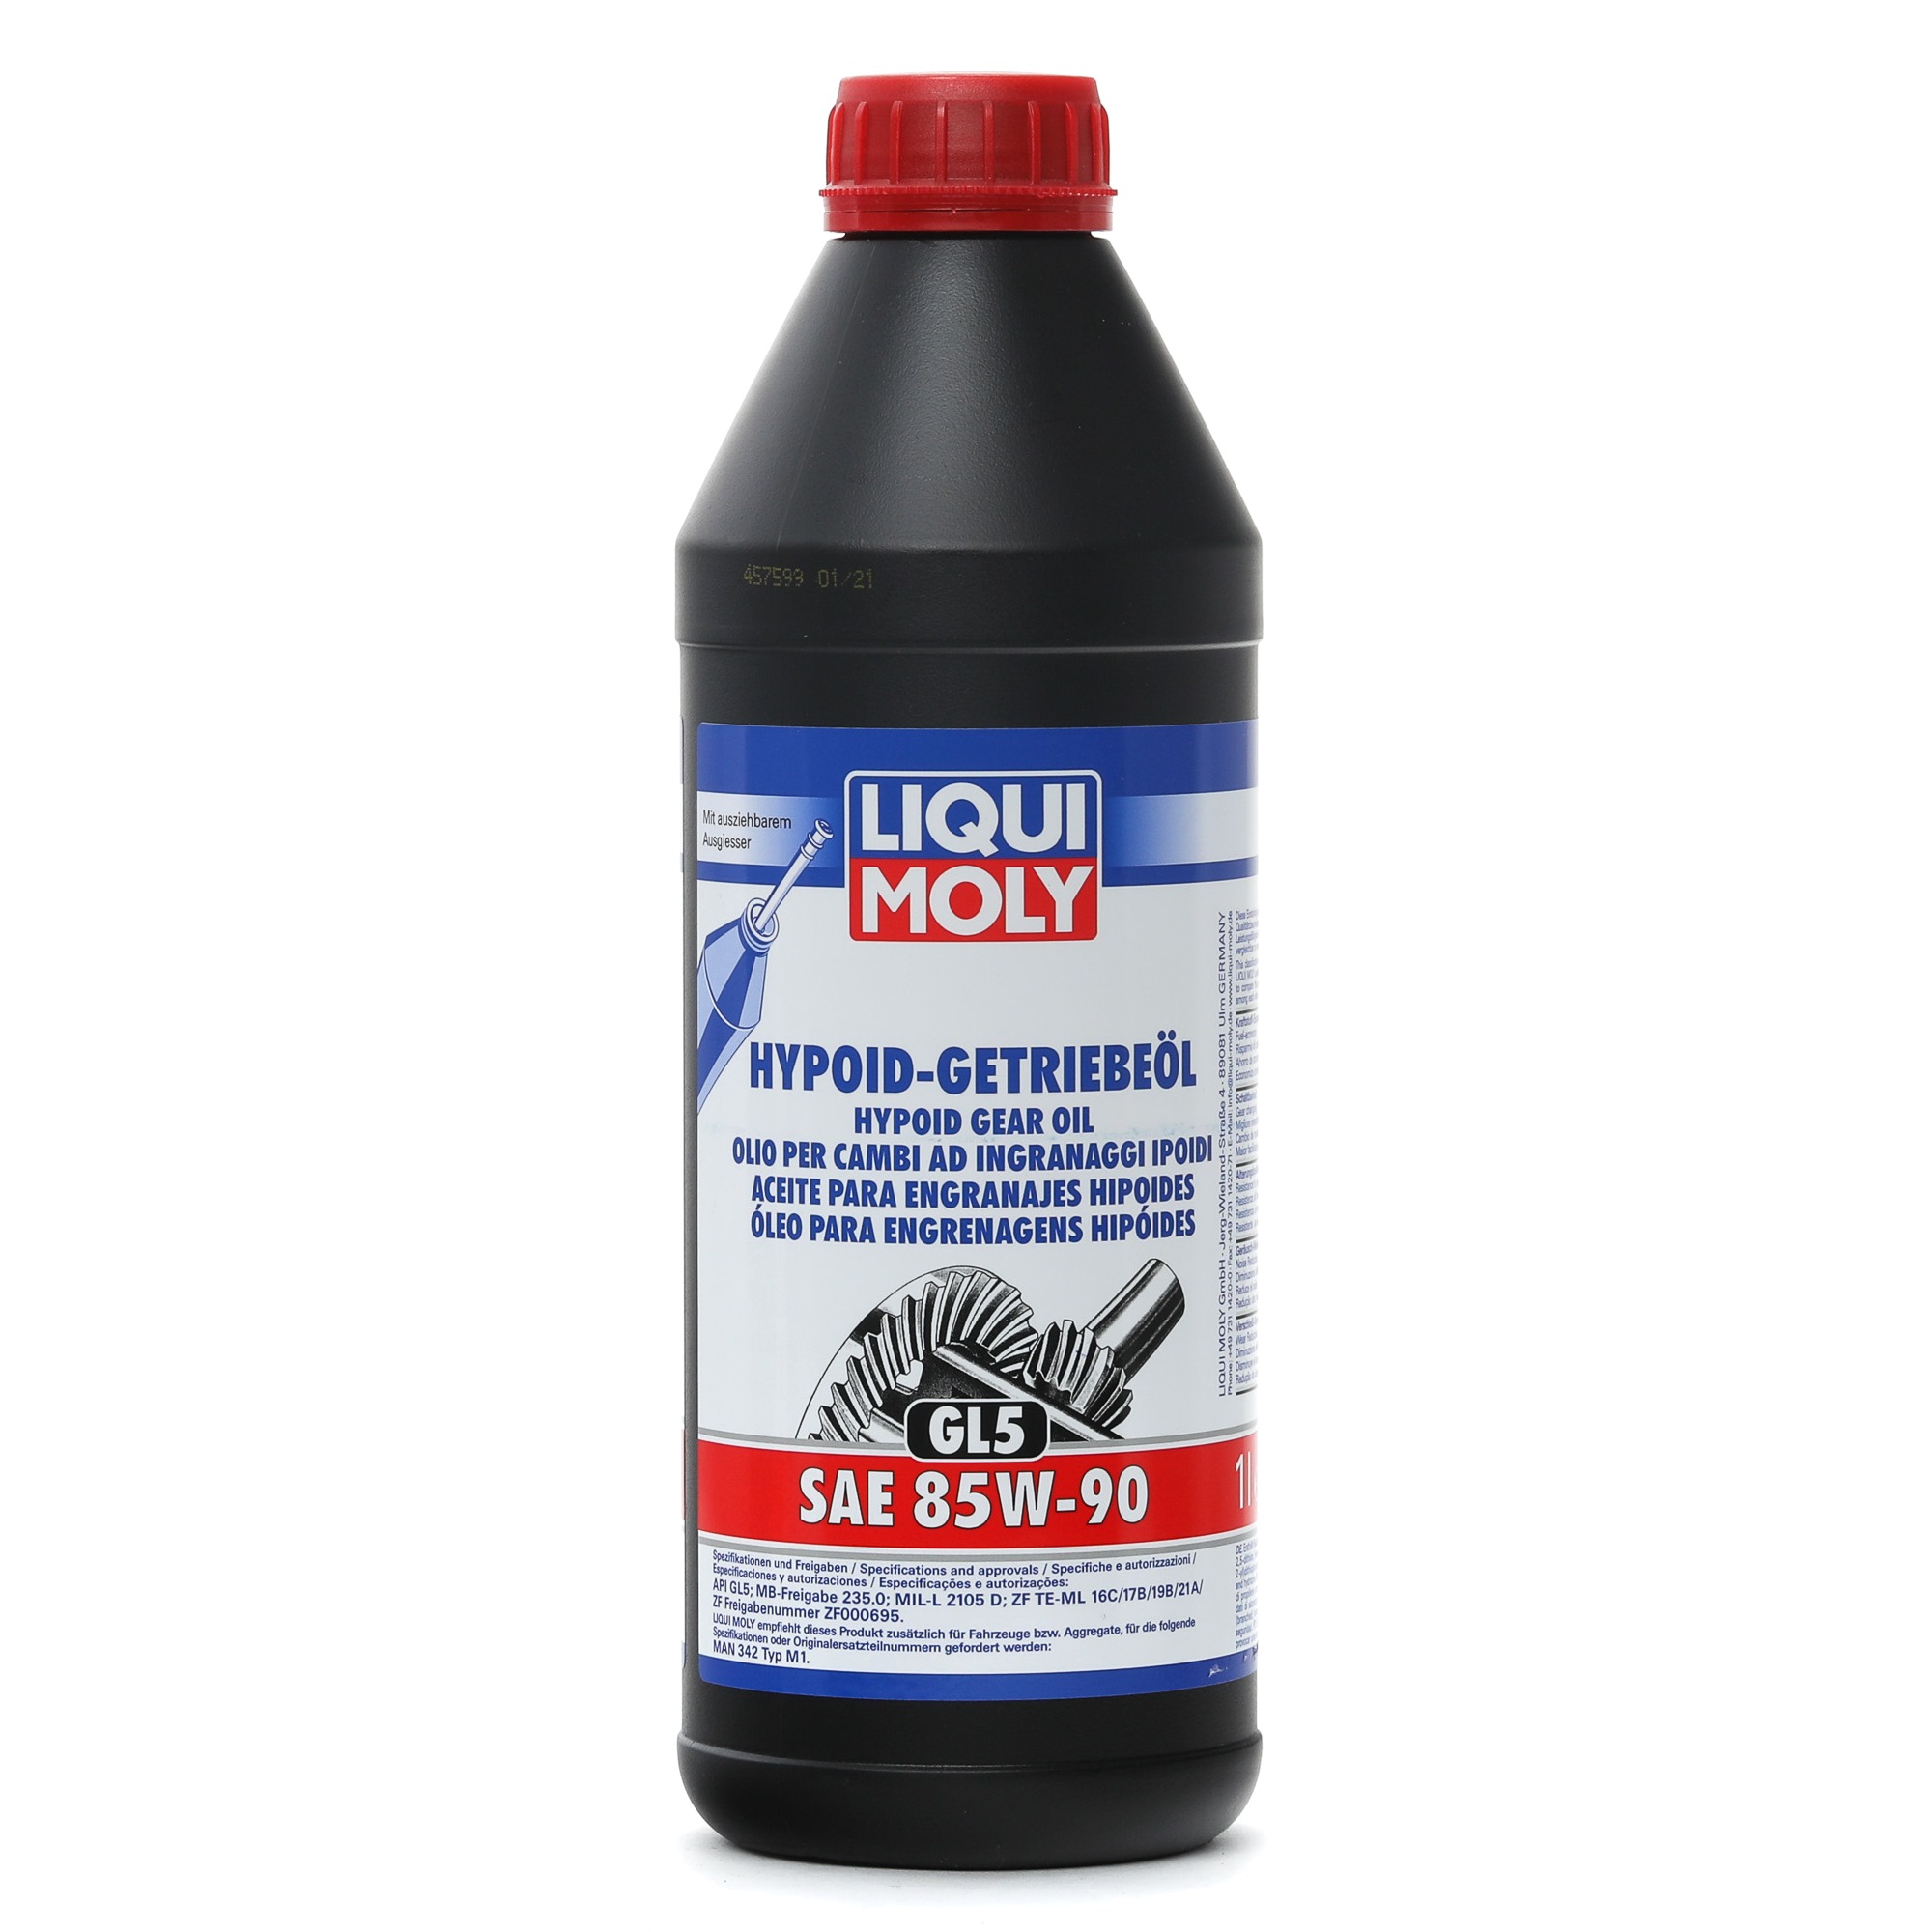 LIQUI MOLY Hypoid GL5 1035 PEUGEOT Motoneta Aceite de transmisión 85W-90, Aceite mineral, Capacidad: 1L